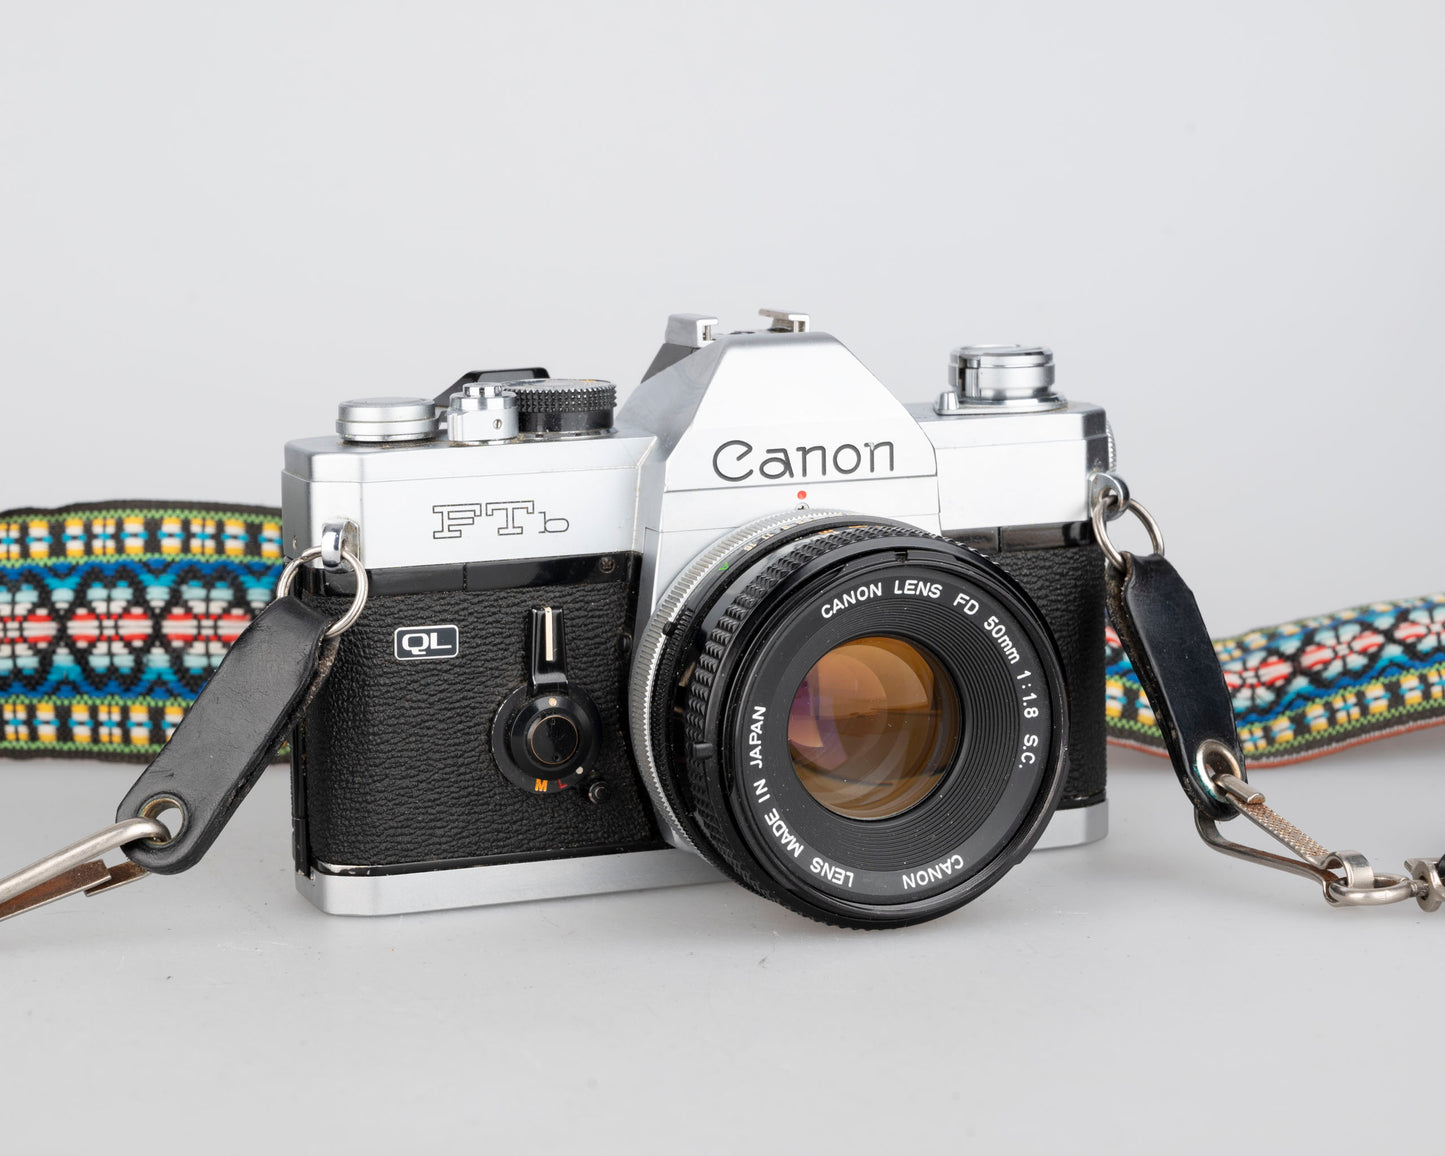 Reflex à film Canon FTb 35 mm avec objectif Canon FD 50 mm f1.8 (série 451988)